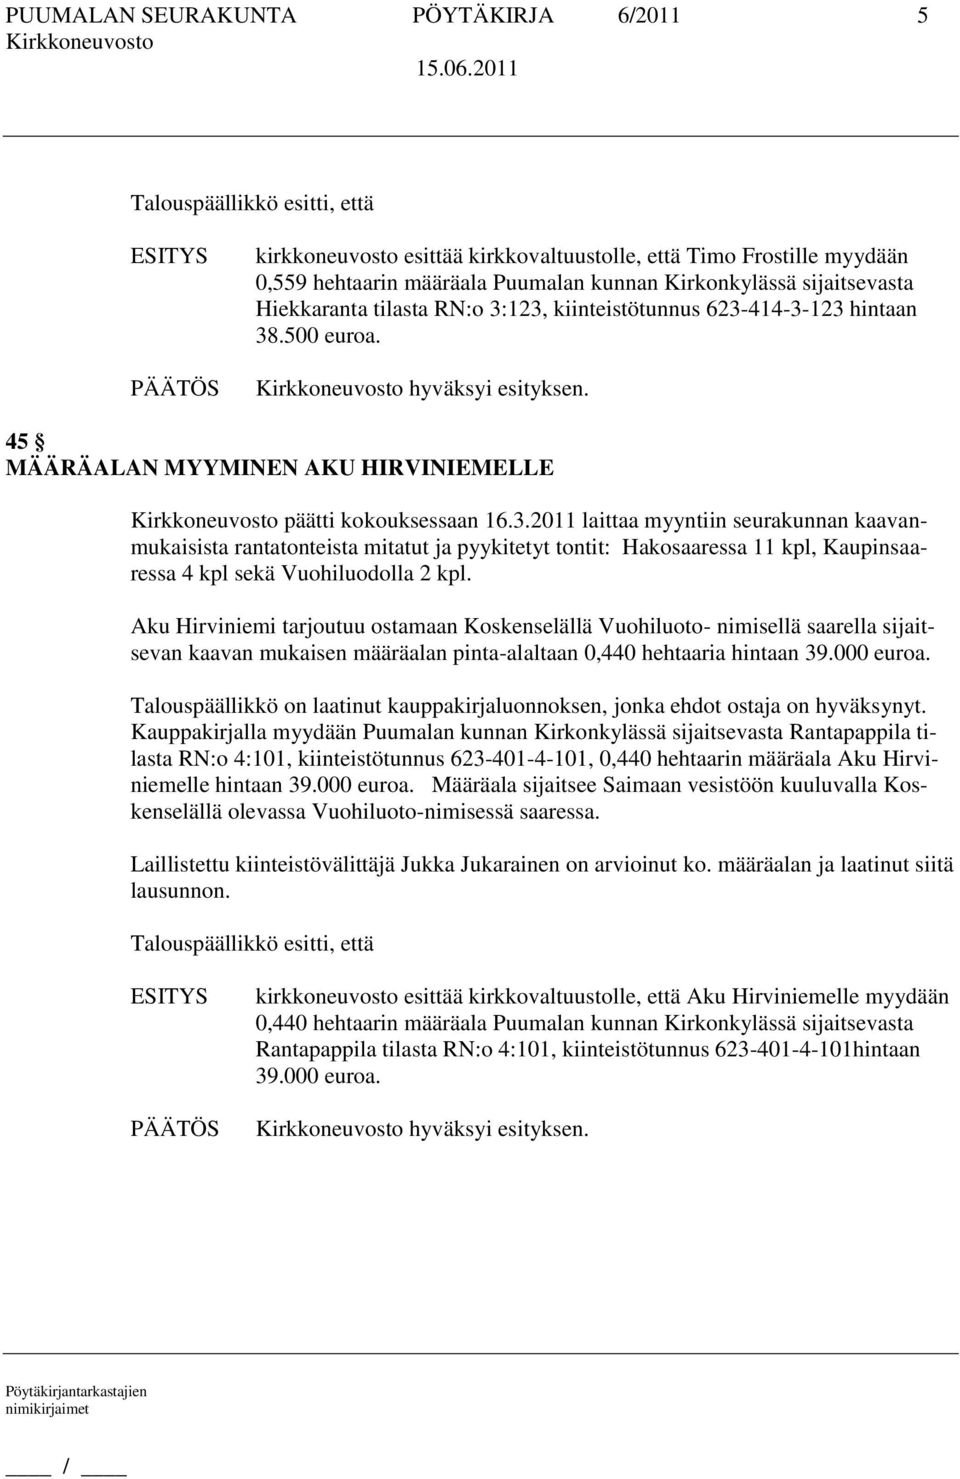 Aku Hirviniemi tarjoutuu ostamaan Koskenselällä Vuohiluoto- nimisellä saarella sijaitsevan kaavan mukaisen määräalan pinta-alaltaan 0,440 hehtaaria hintaan 39.000 euroa.